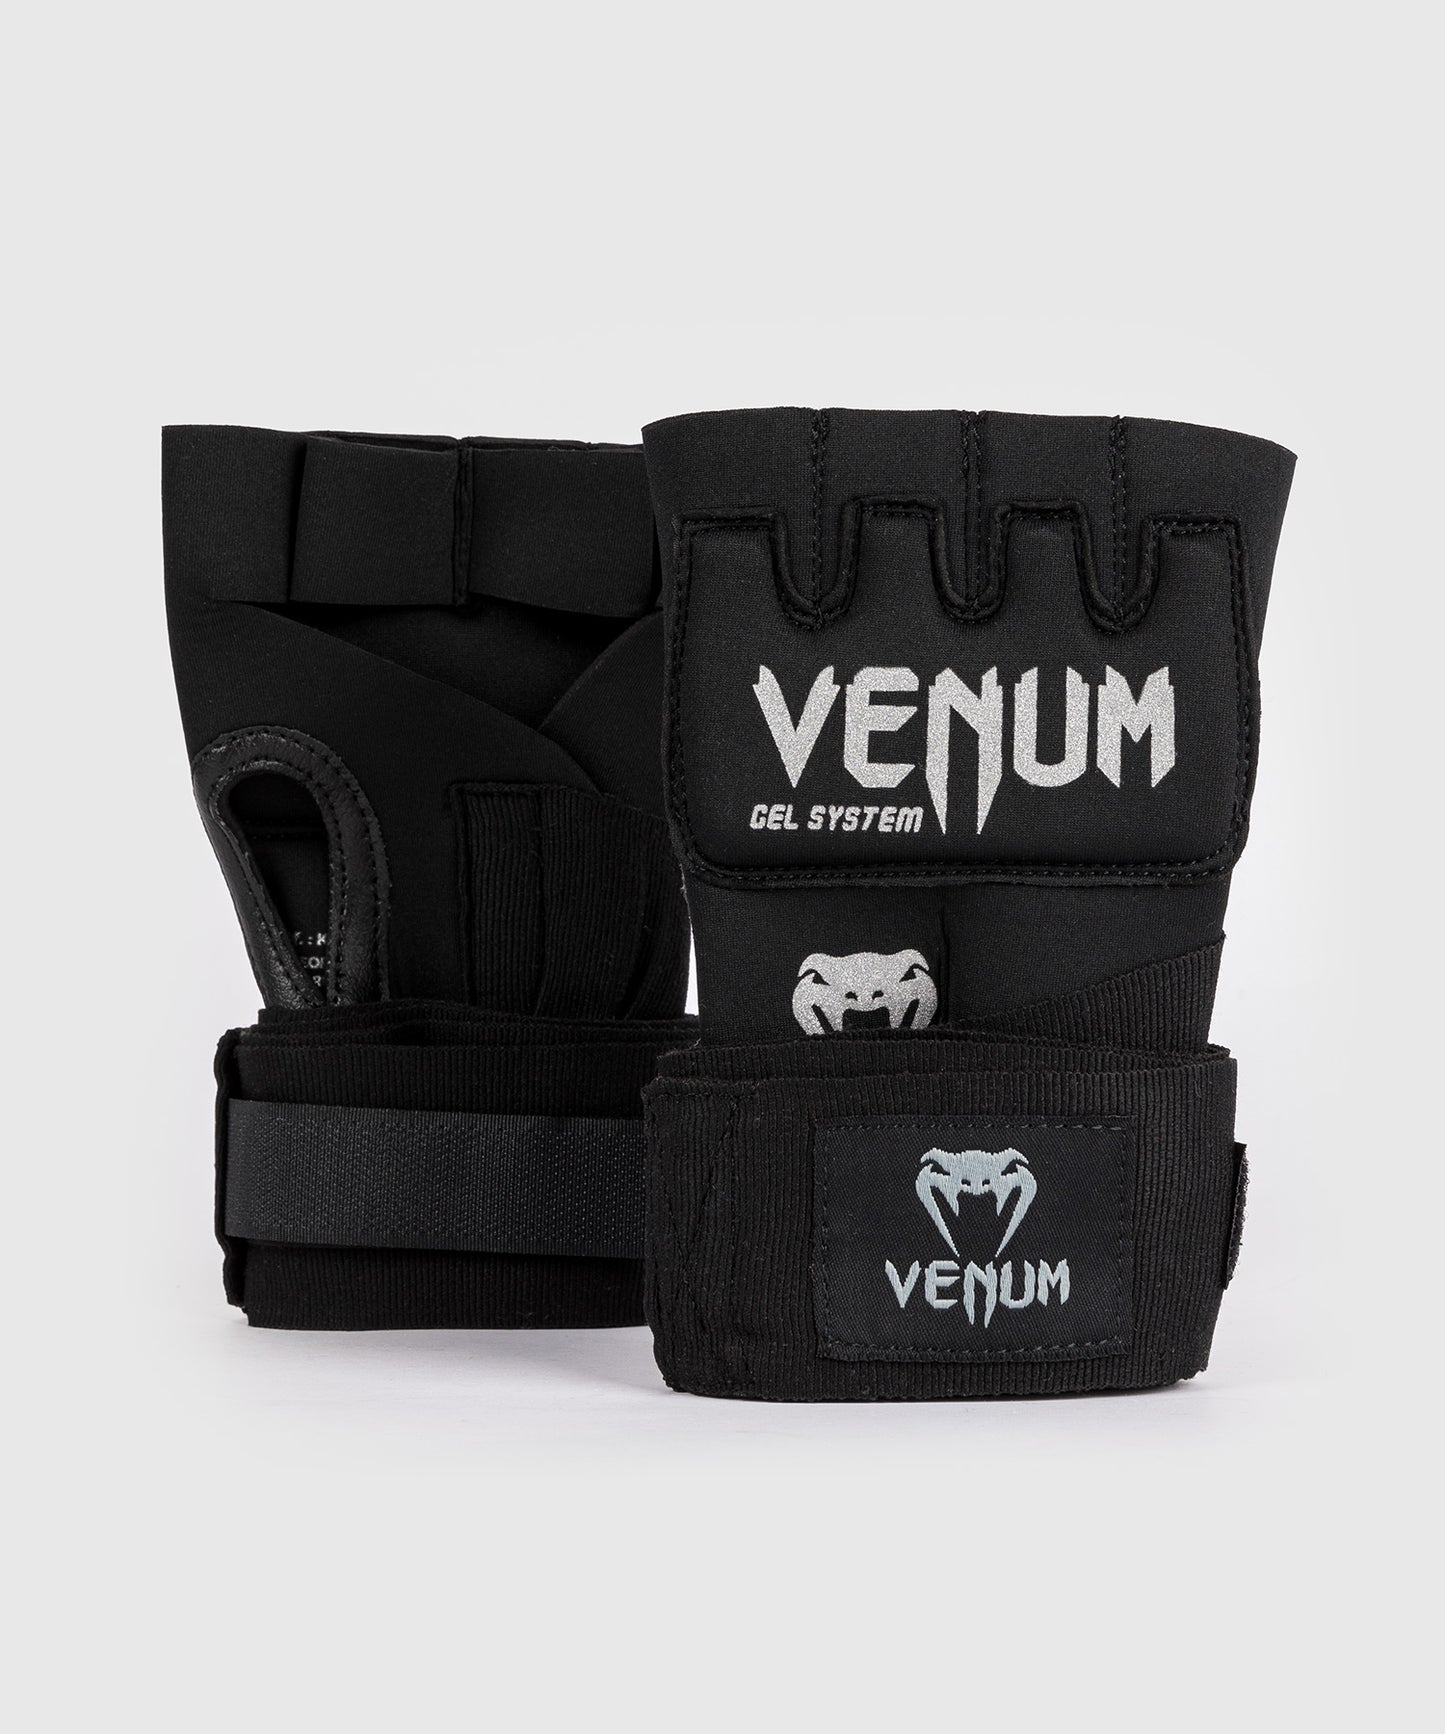 Sous-gants Venum Gel Kontact - Noir/Argent